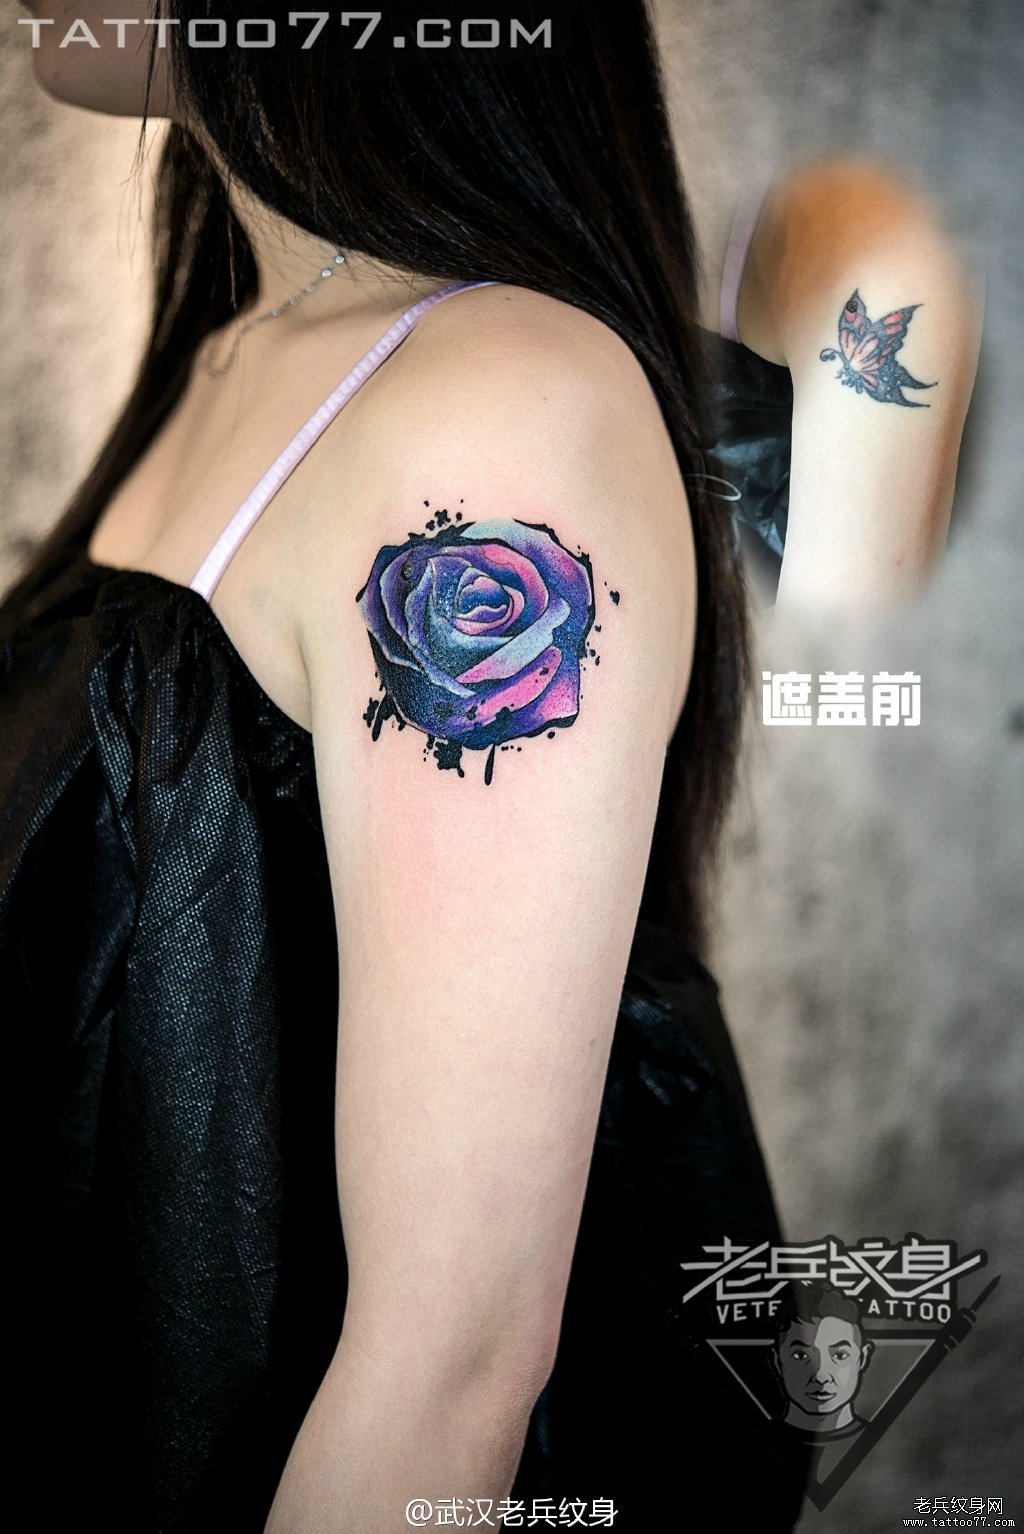 大臂泼墨玫瑰花纹身图案作品遮盖旧纹身